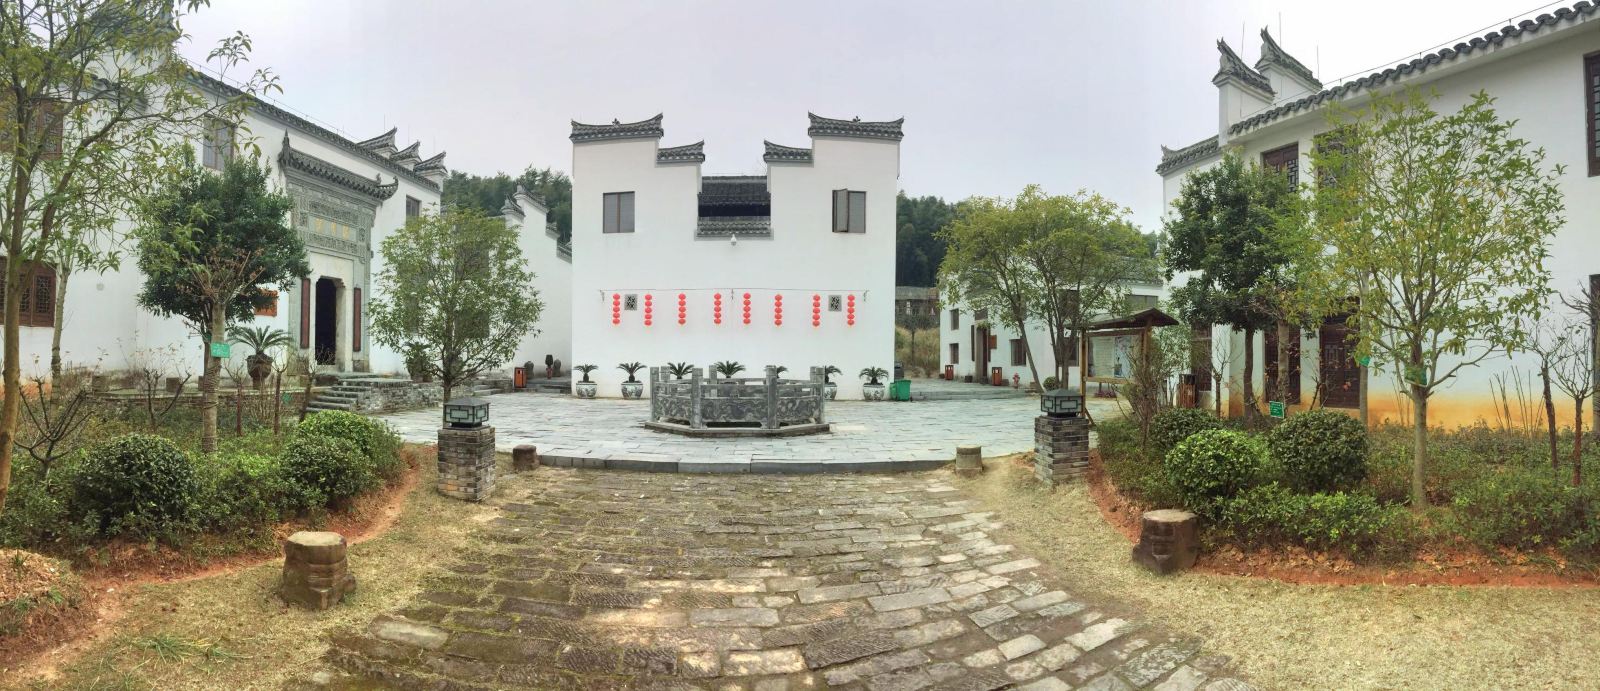 江西明清古民居博览园